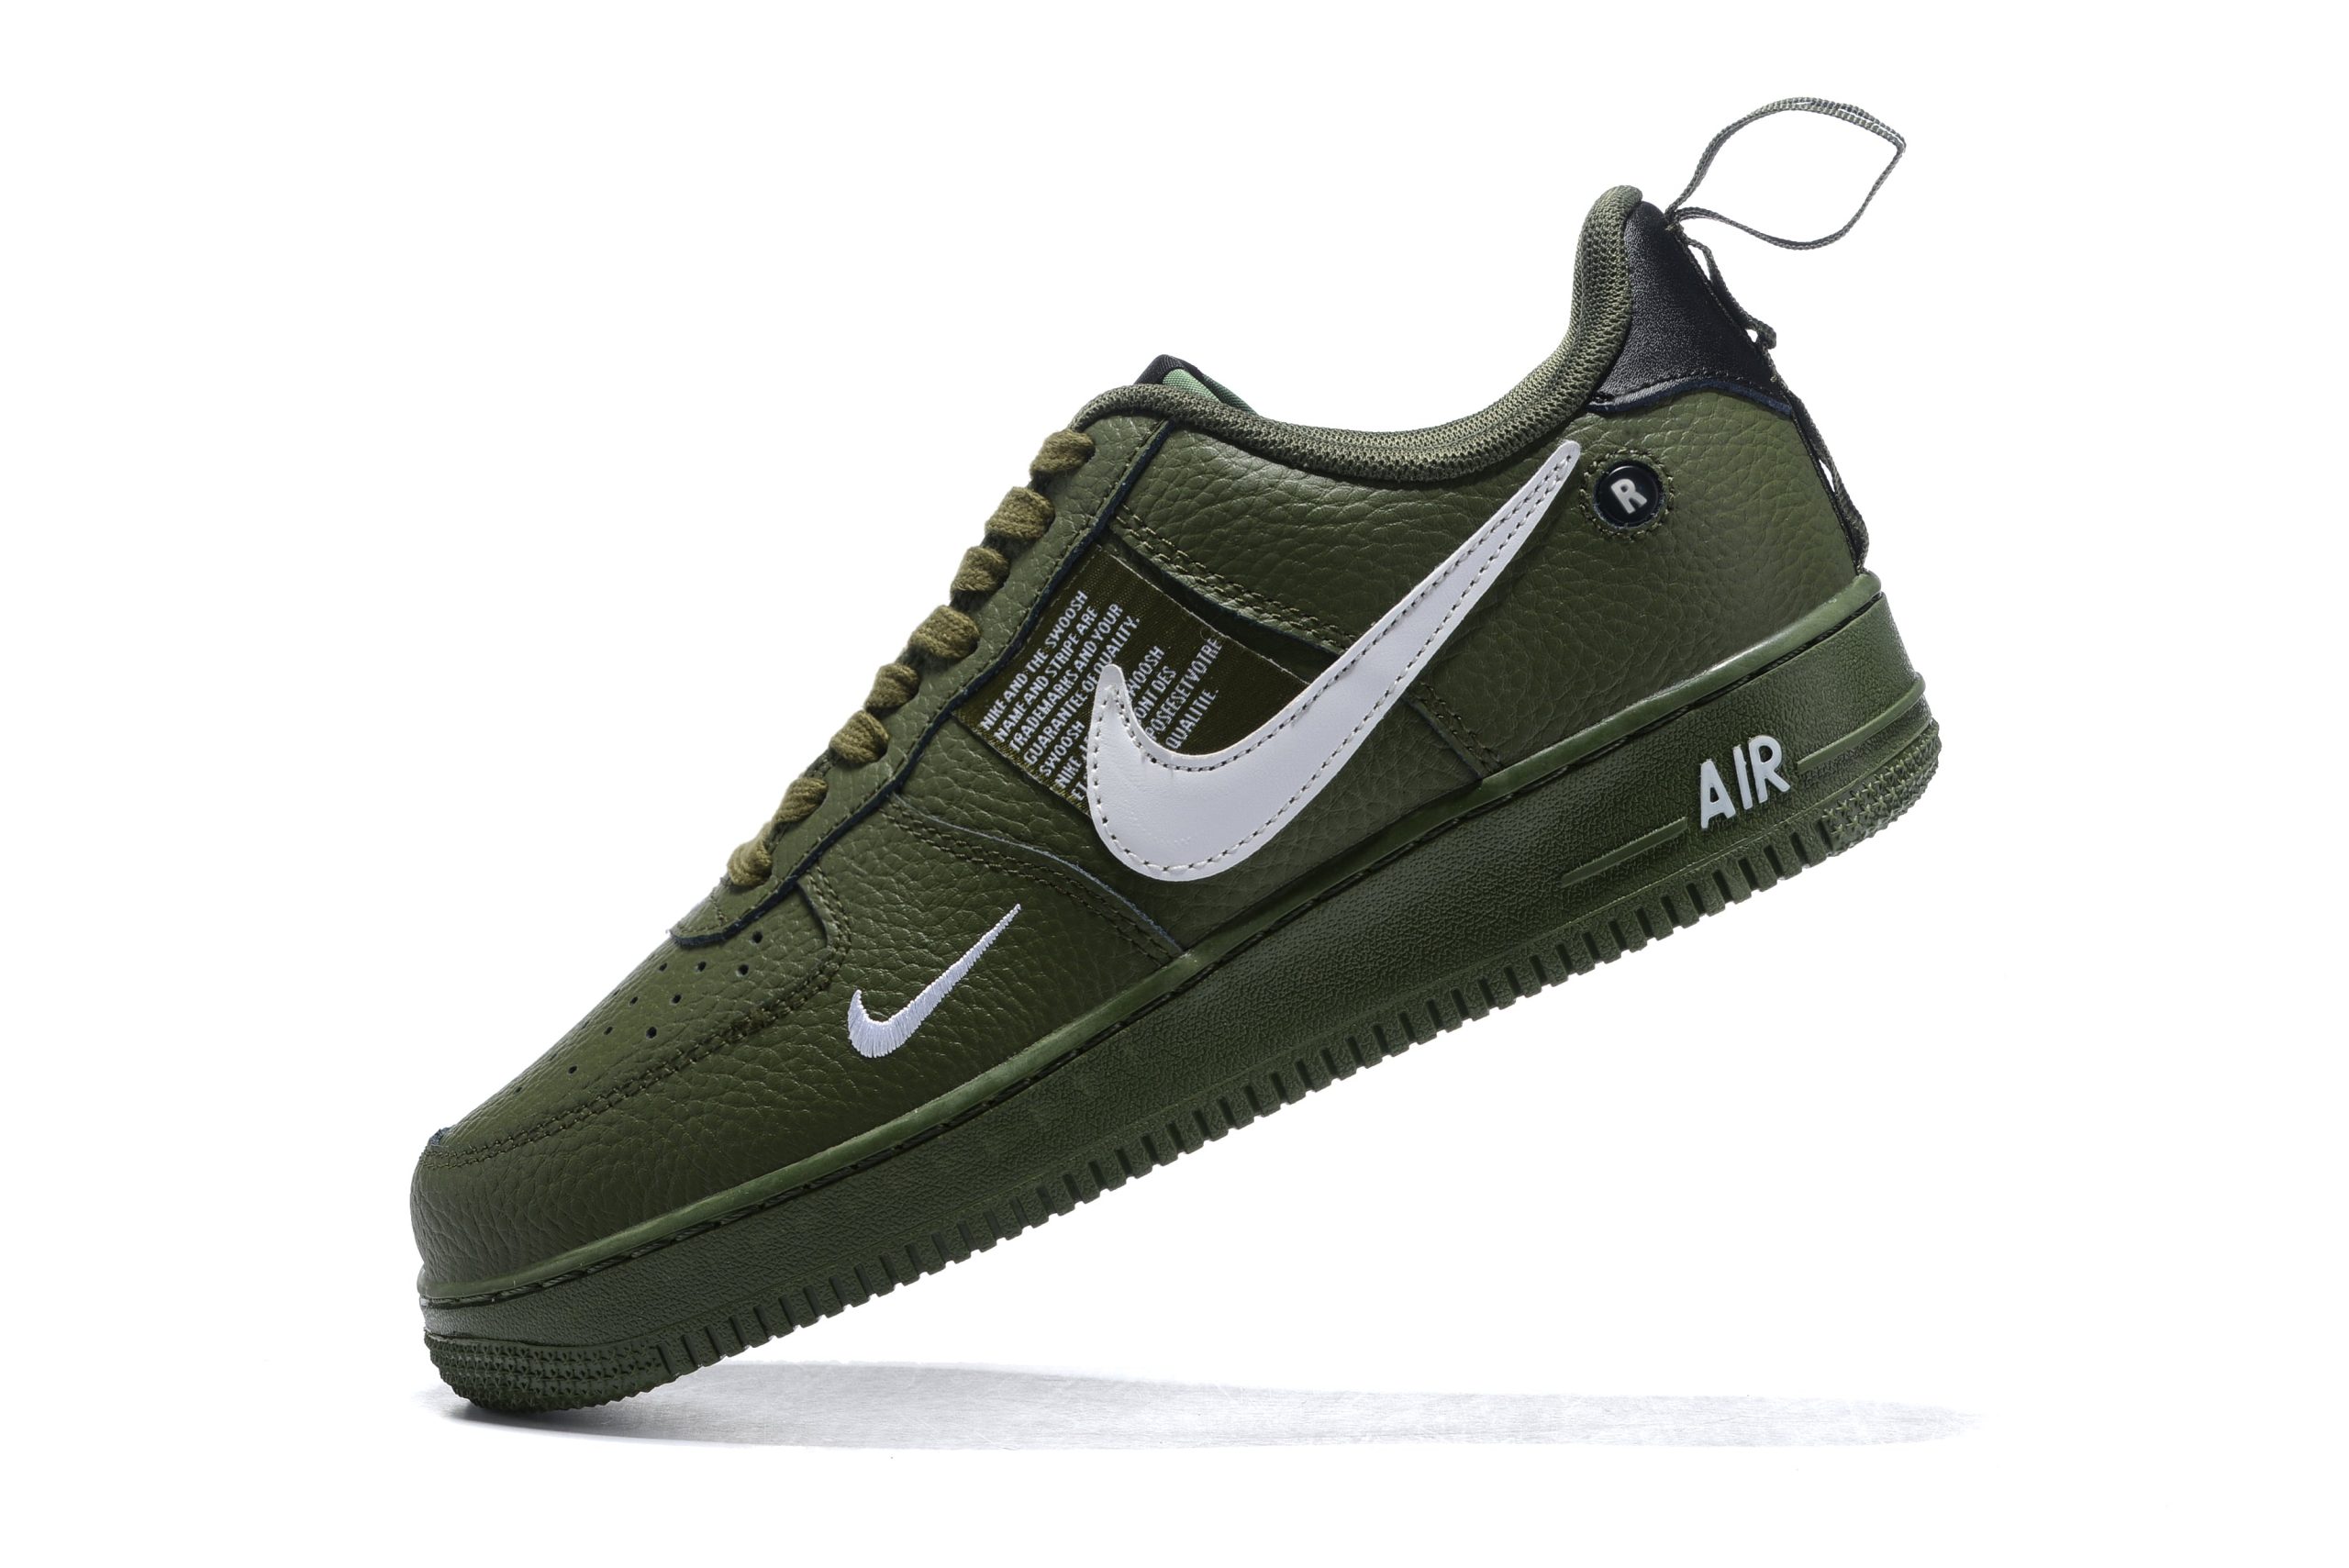 Nike Air 1 Low "Verde